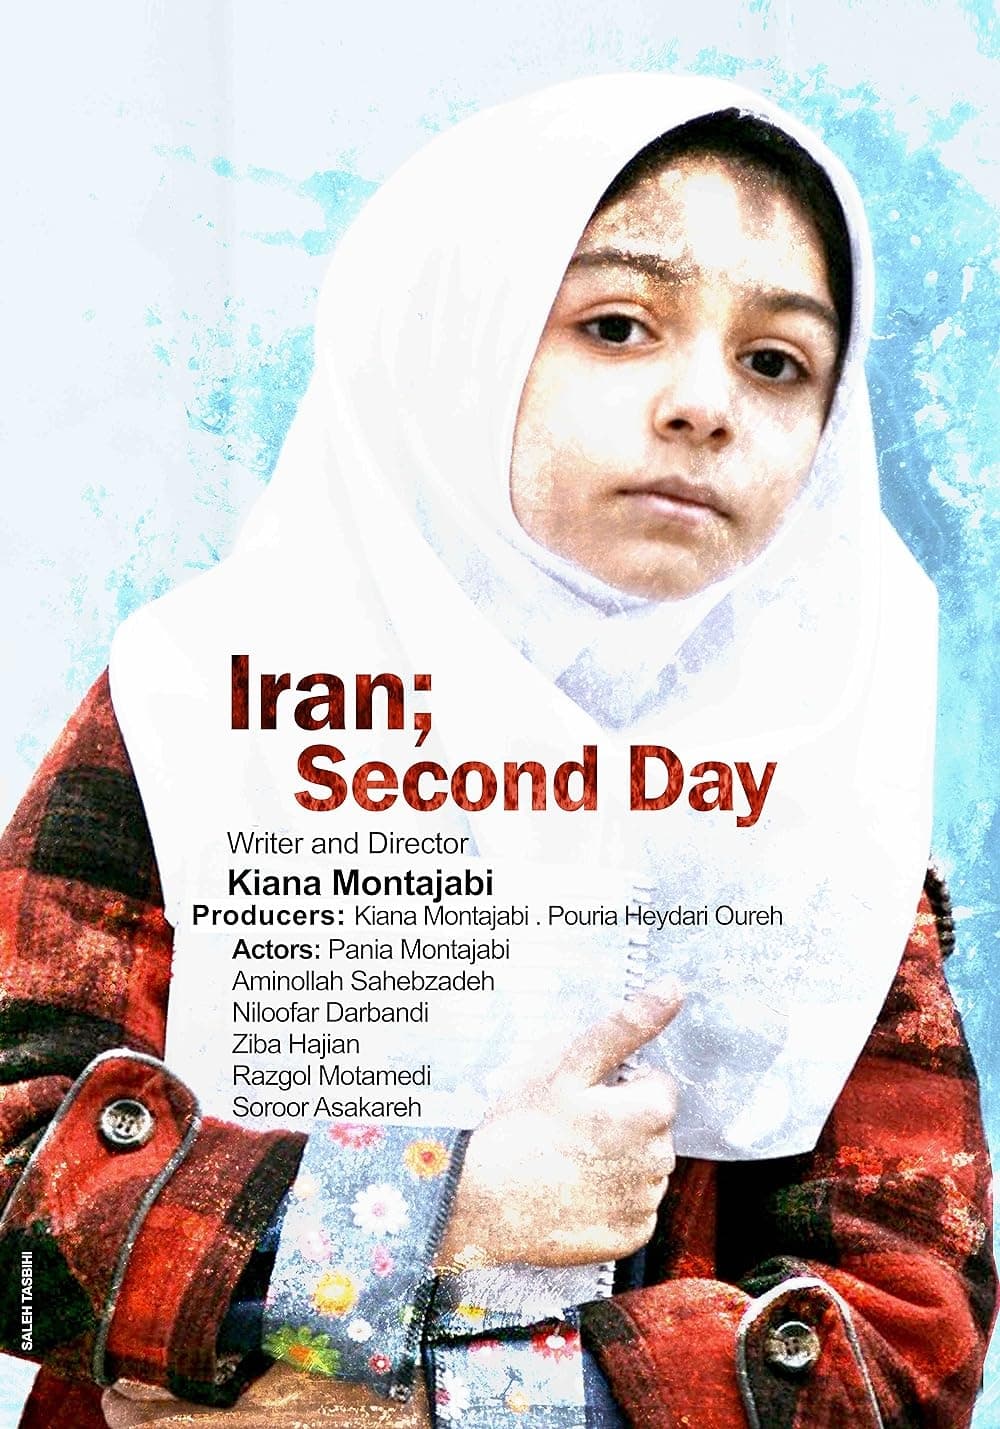 Iran, Secon Day